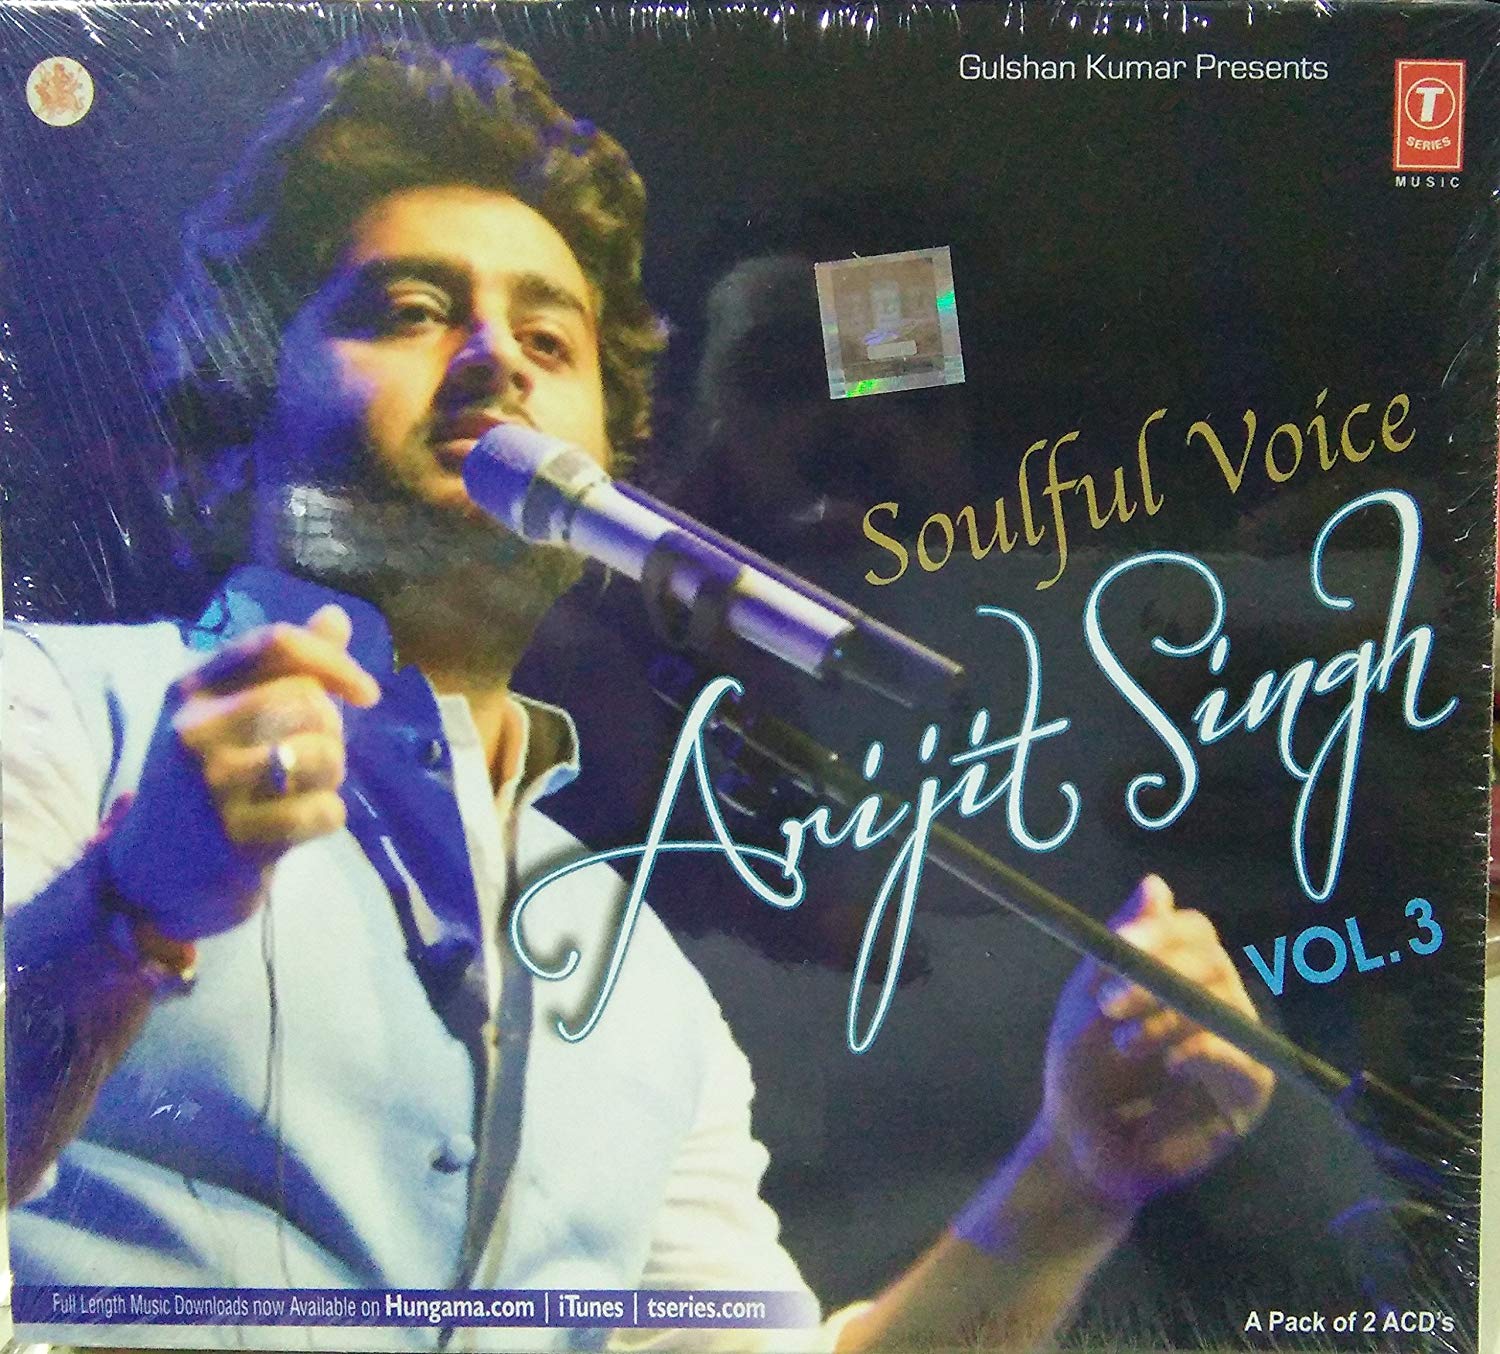 Buy Soulful Voice - Arijit Singh , HD Wallpaper & Backgrounds